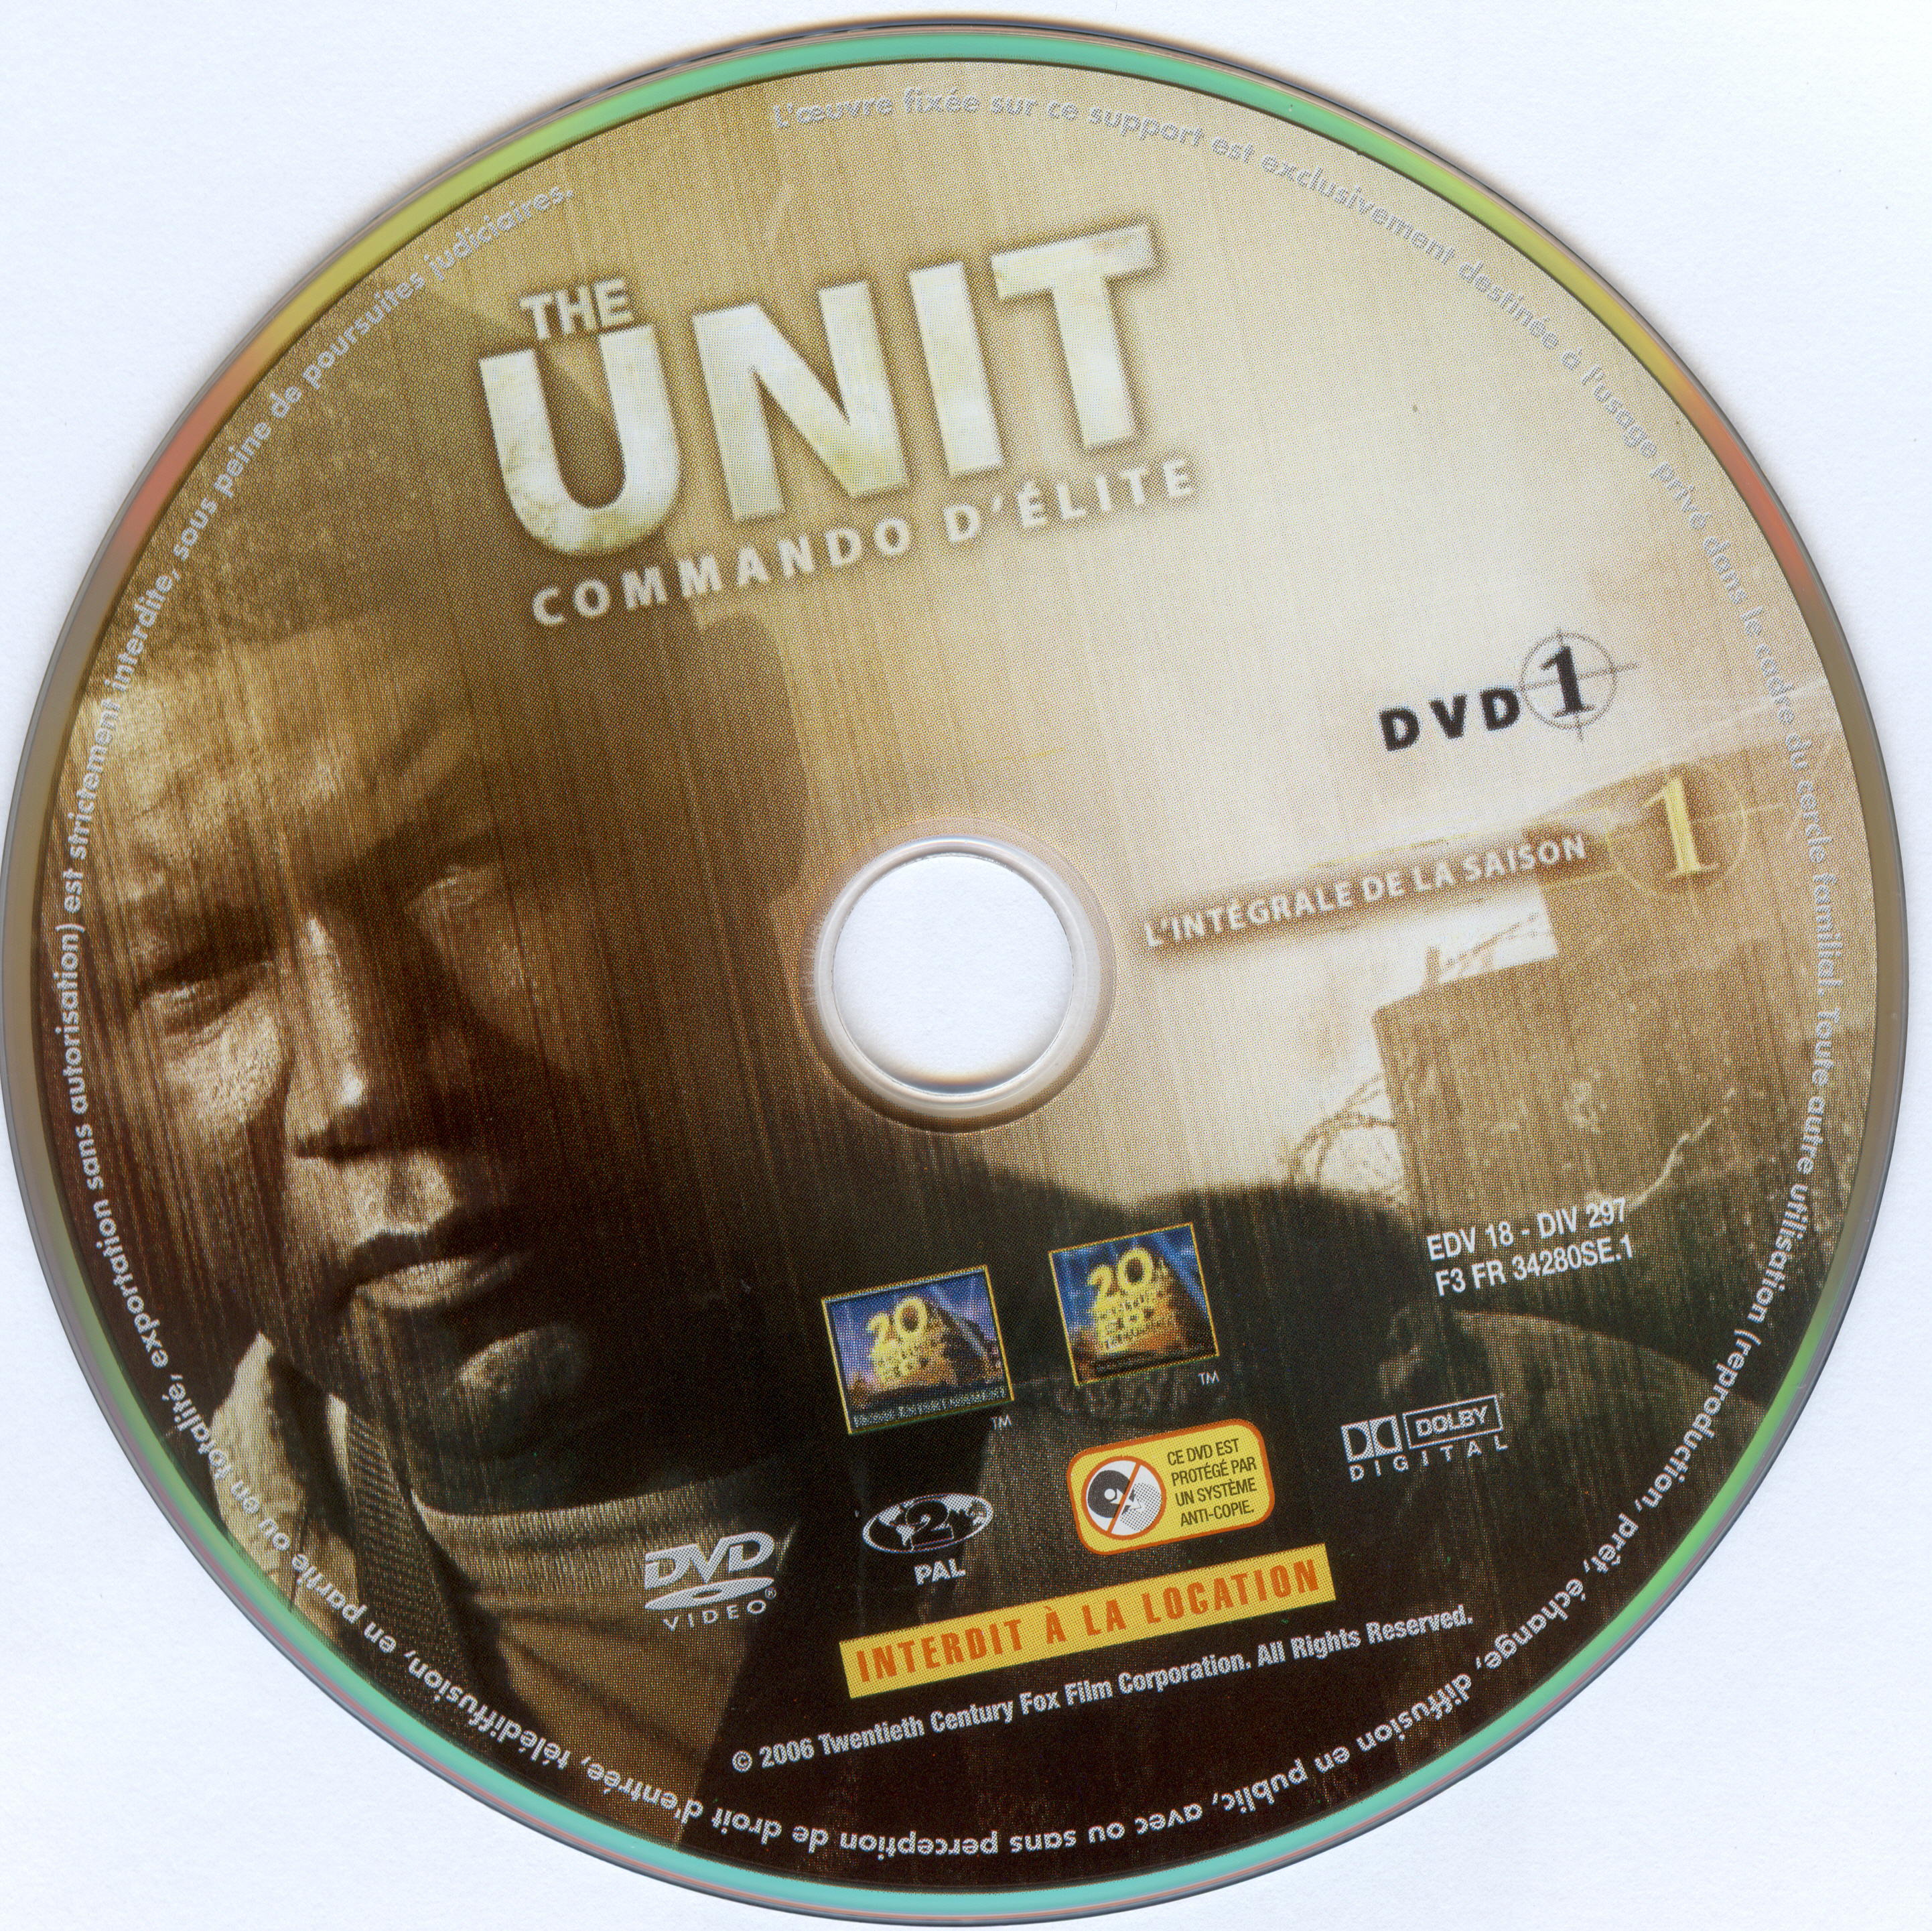 The unit saison 1 DVD 1